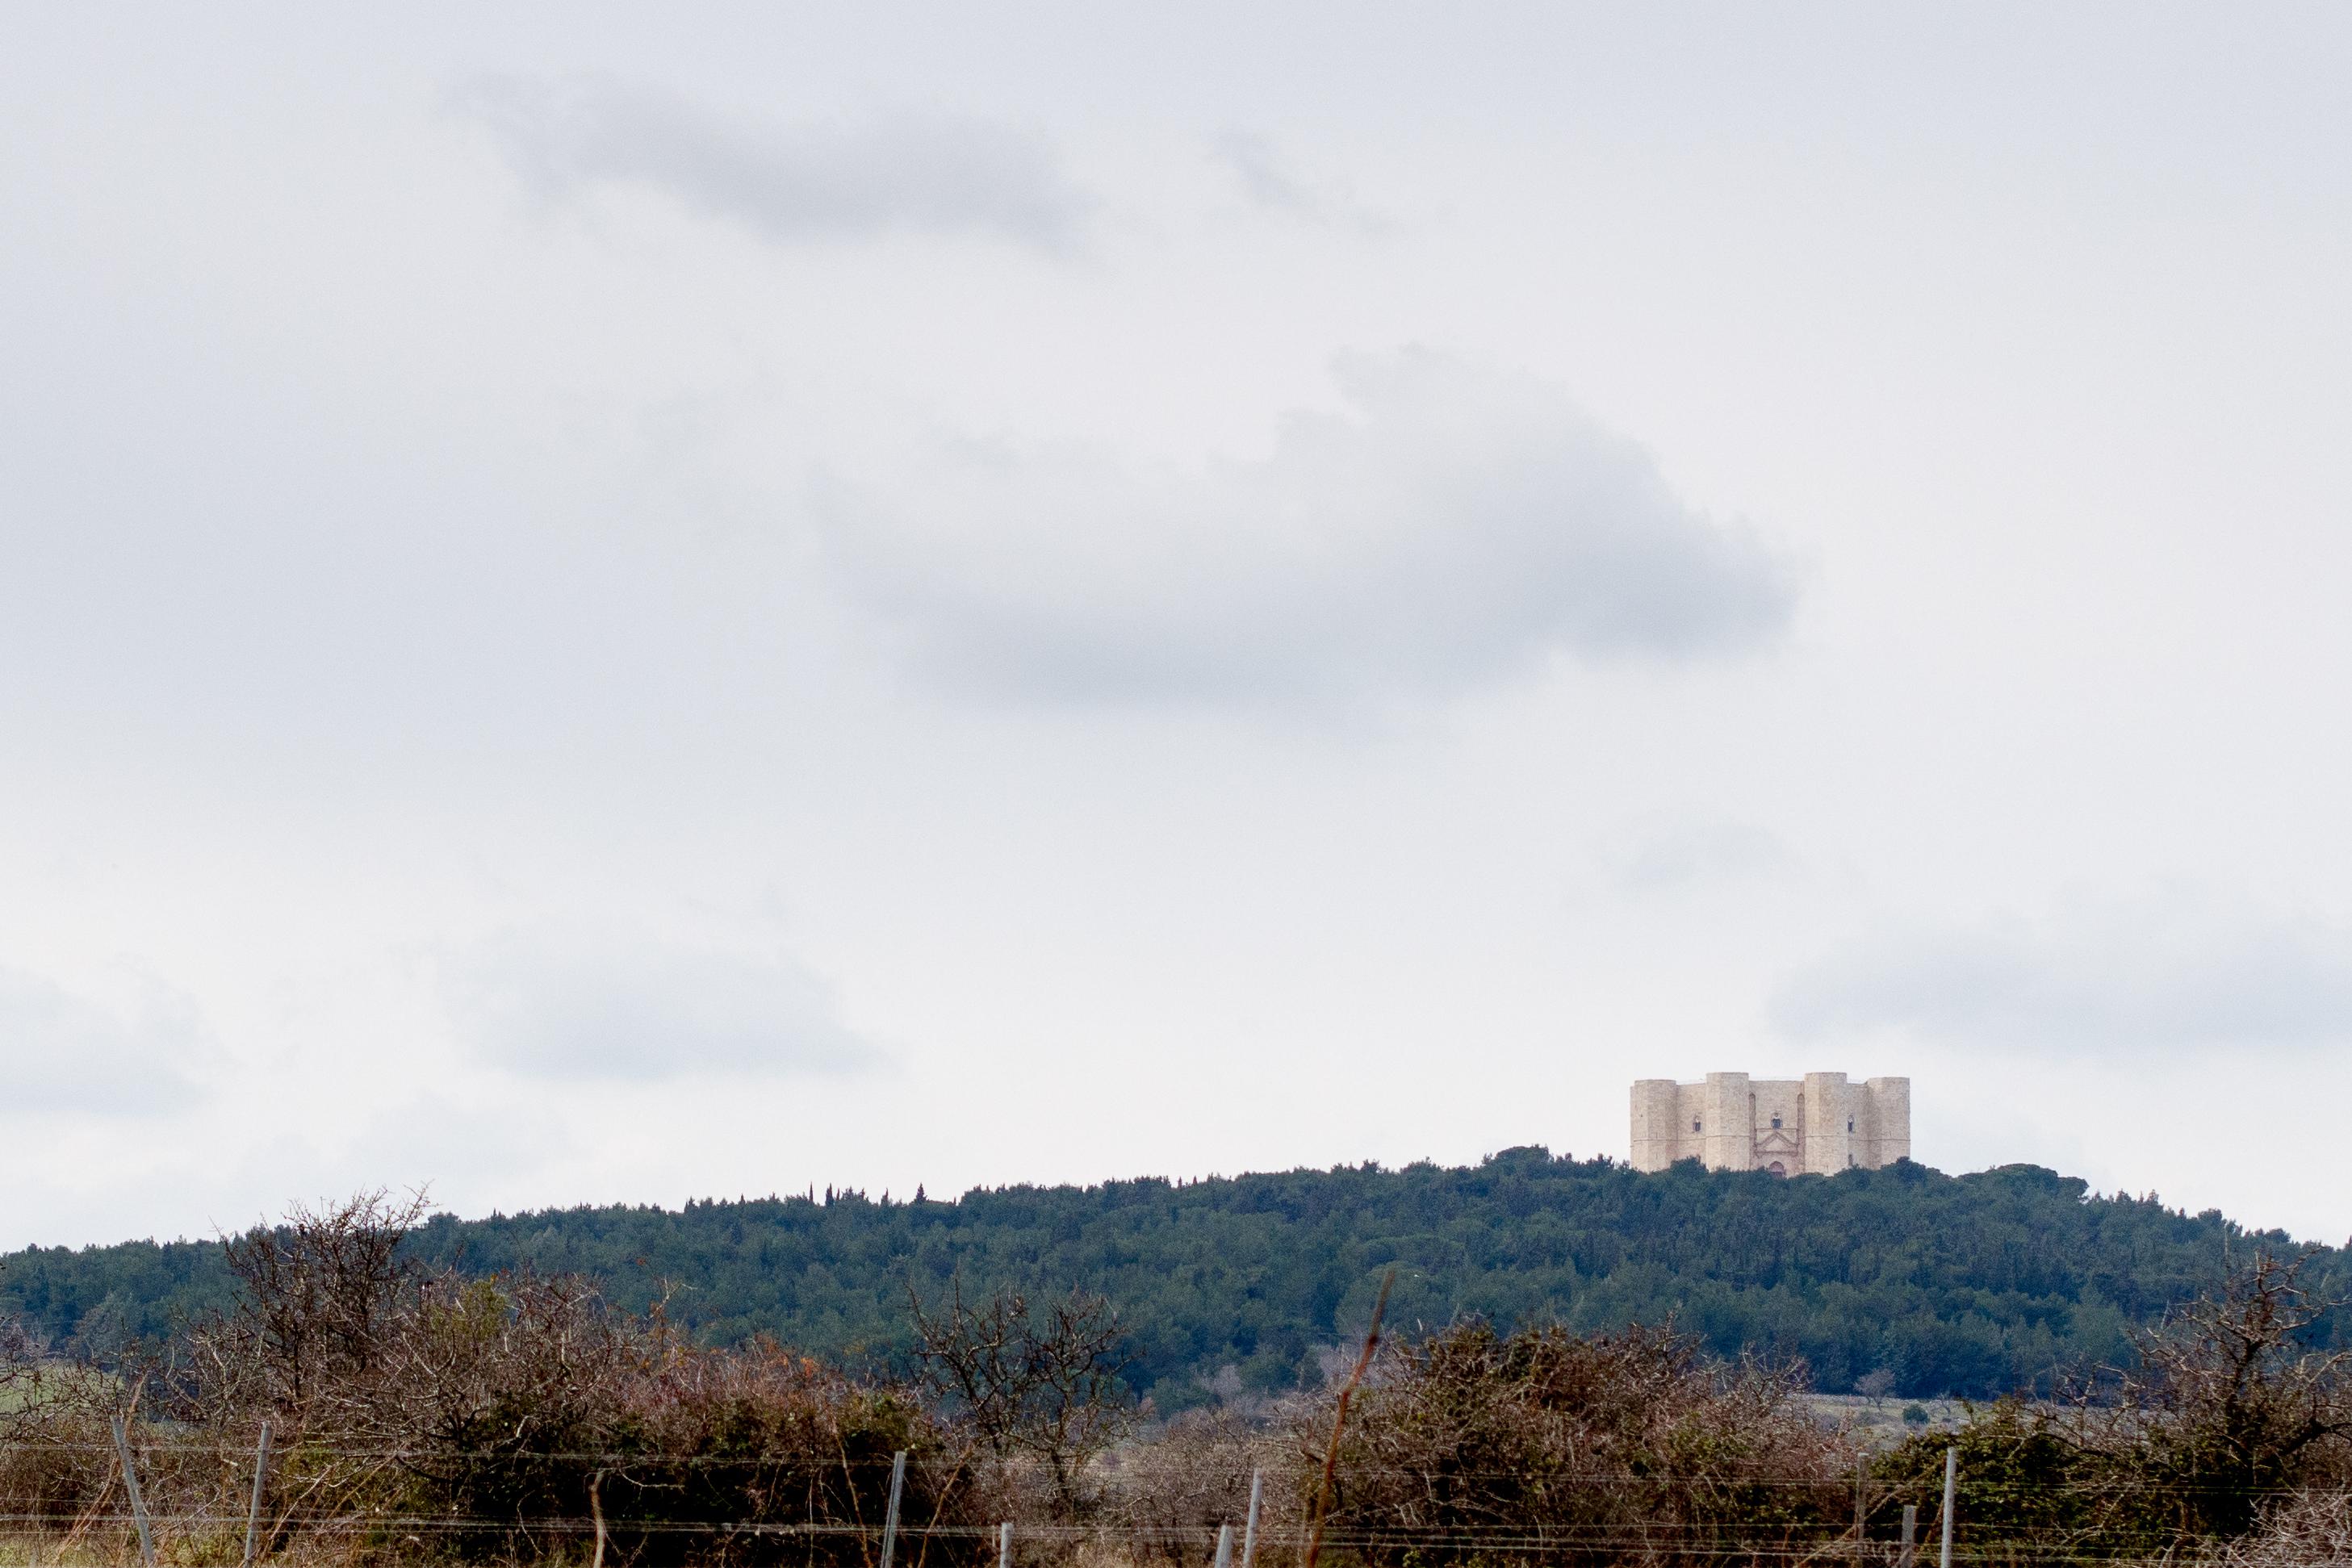 Castel del Monte domina un ampio panorama ed è visibile da lontano (CREDIT: Natalino Russo)